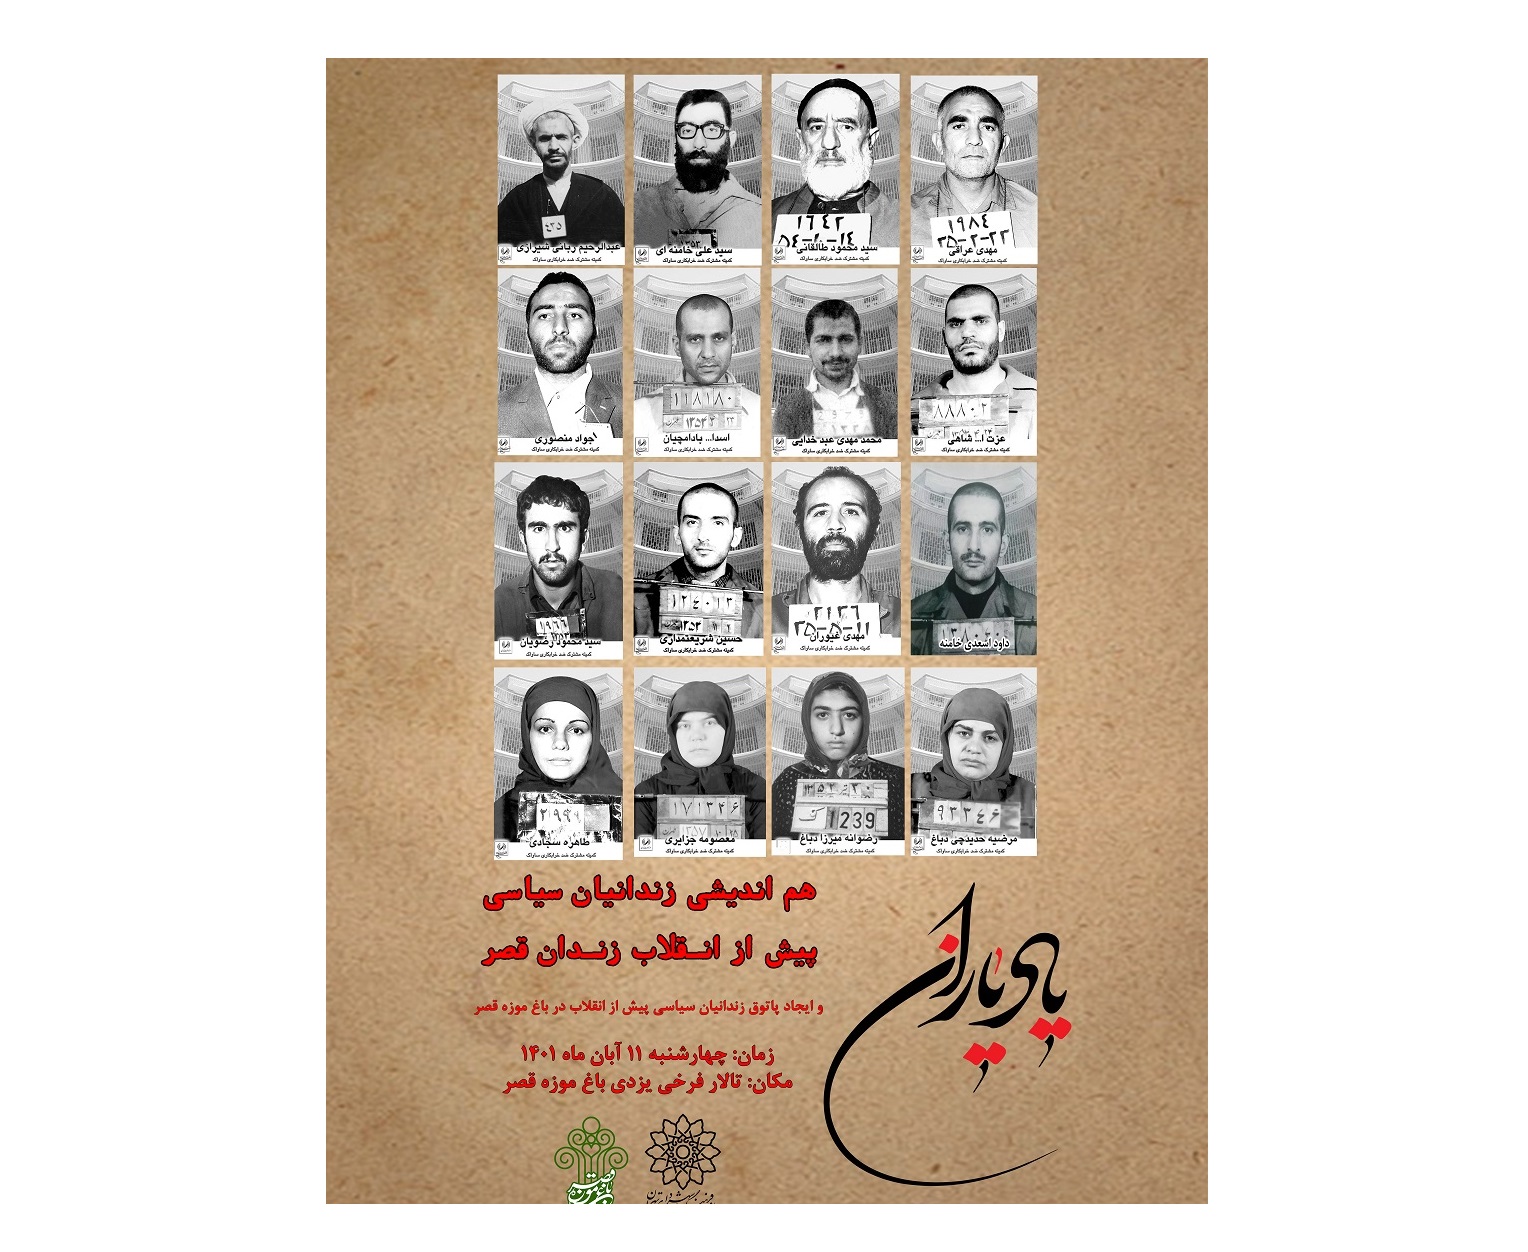 زندانیان سیاسی پیش از انقلاب اسلامی در باغ موزه قصر گرد هم می آیند